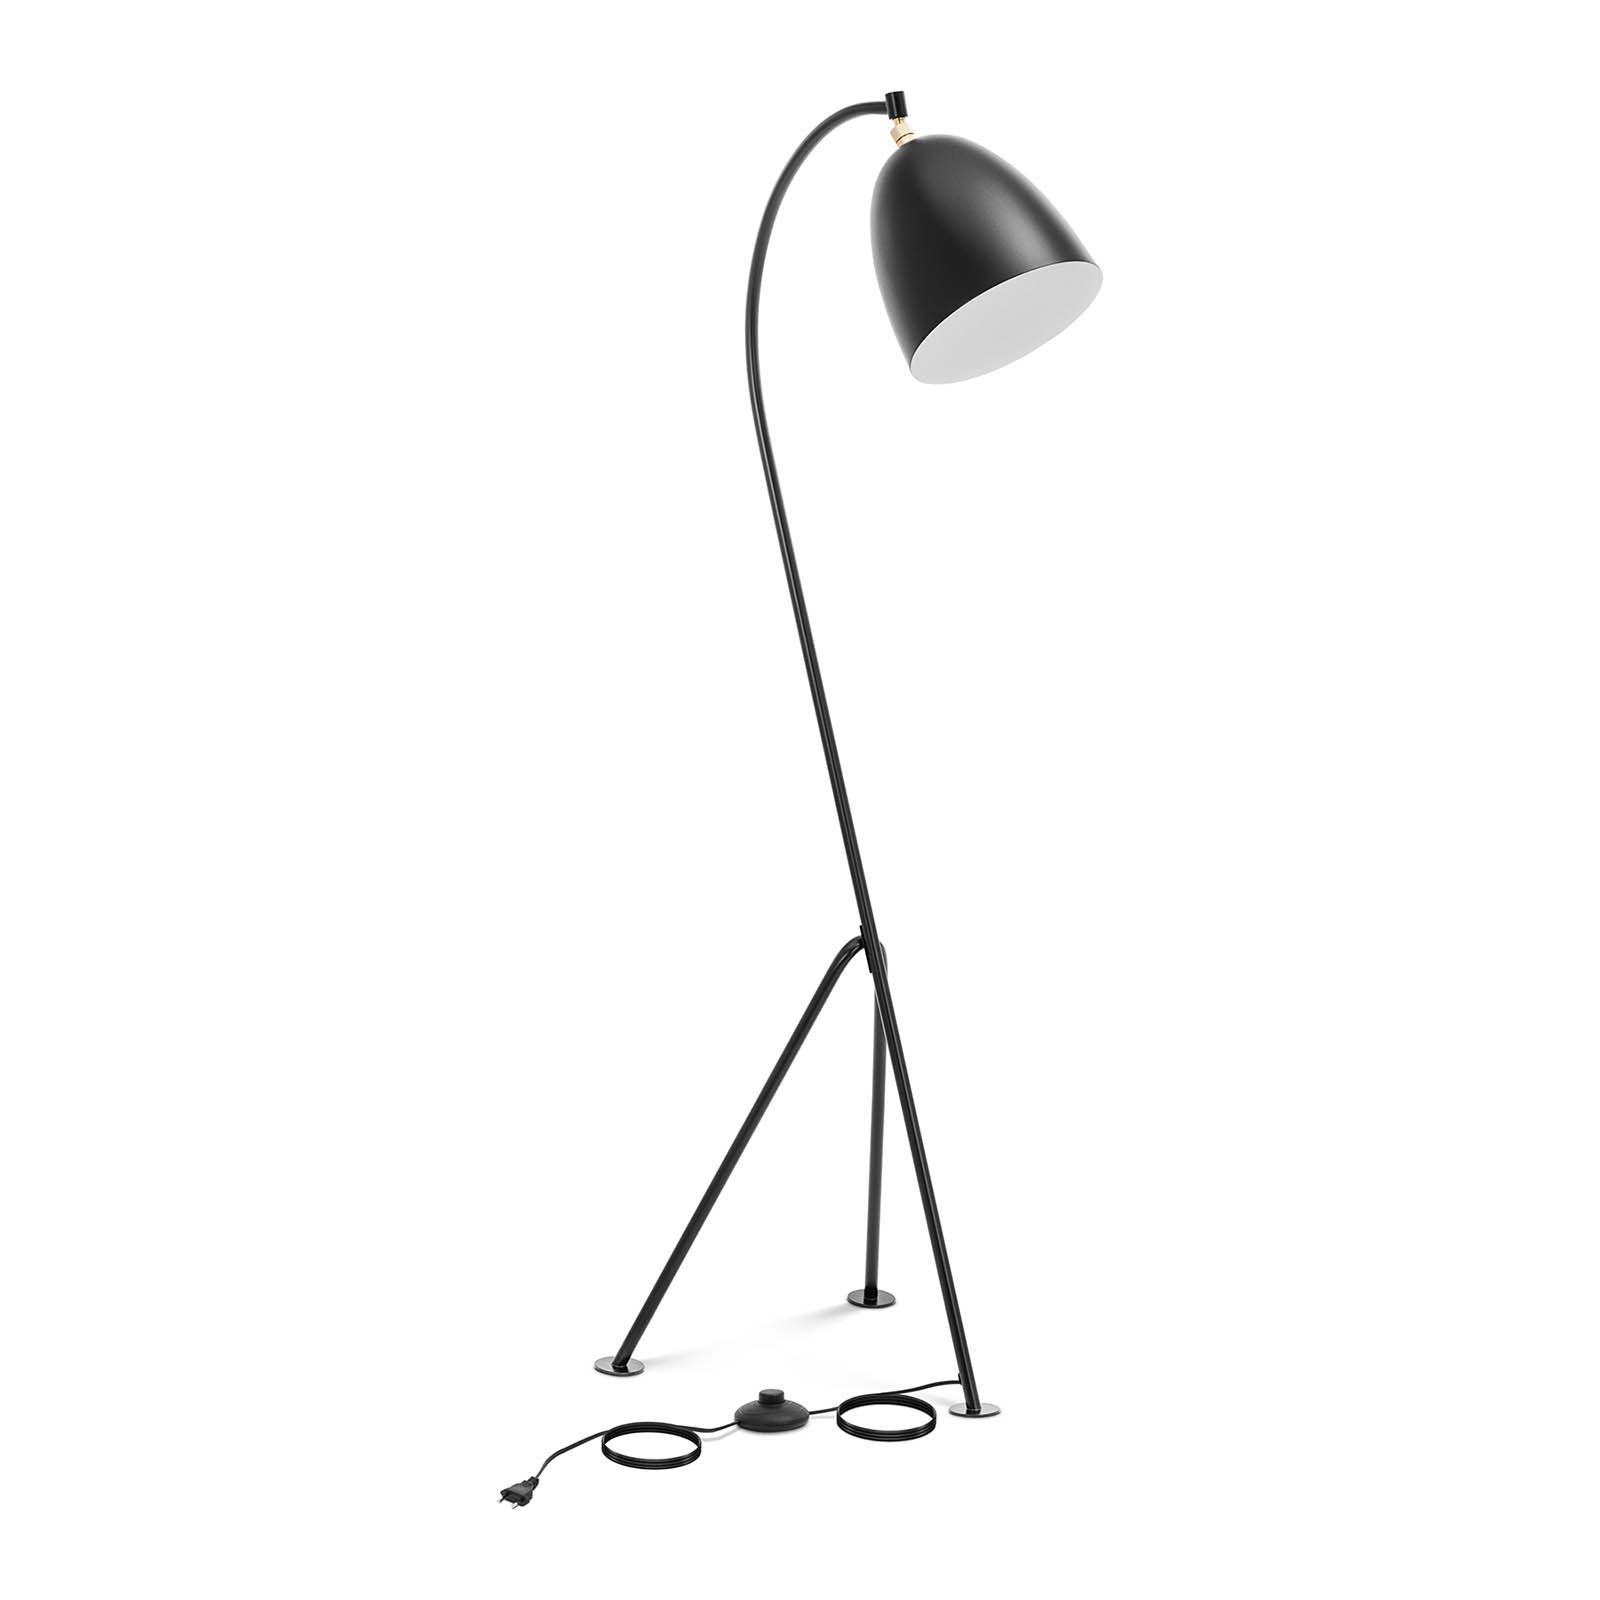 Uniprodo Stehlampe Bogenlampe Stehlampe beweglicher Schirm 40 W E27 Stehleuchte